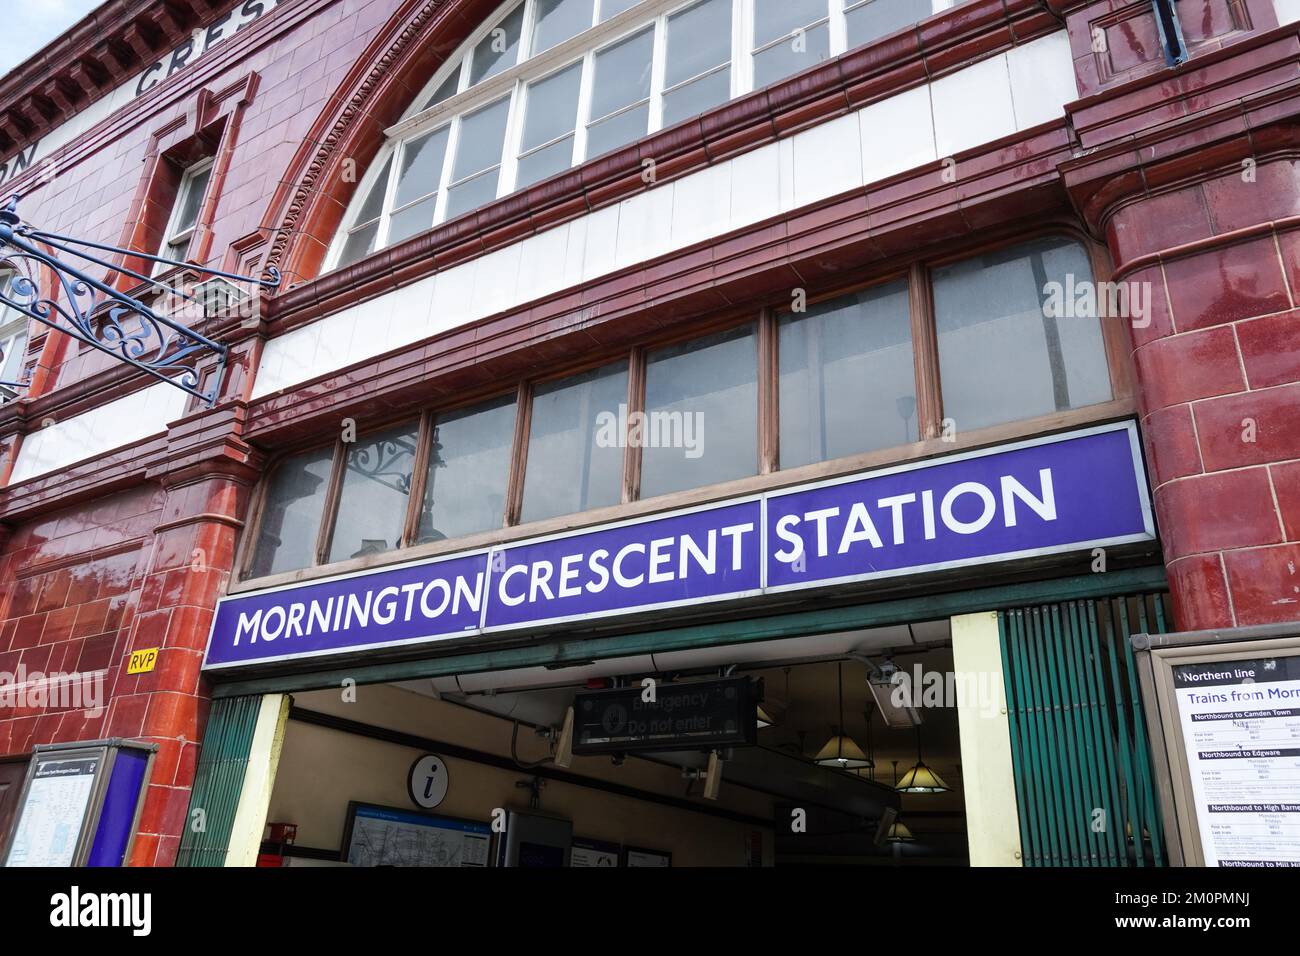 Métro Mornington Crescent, station de métro Londres Angleterre Royaume-Uni Banque D'Images